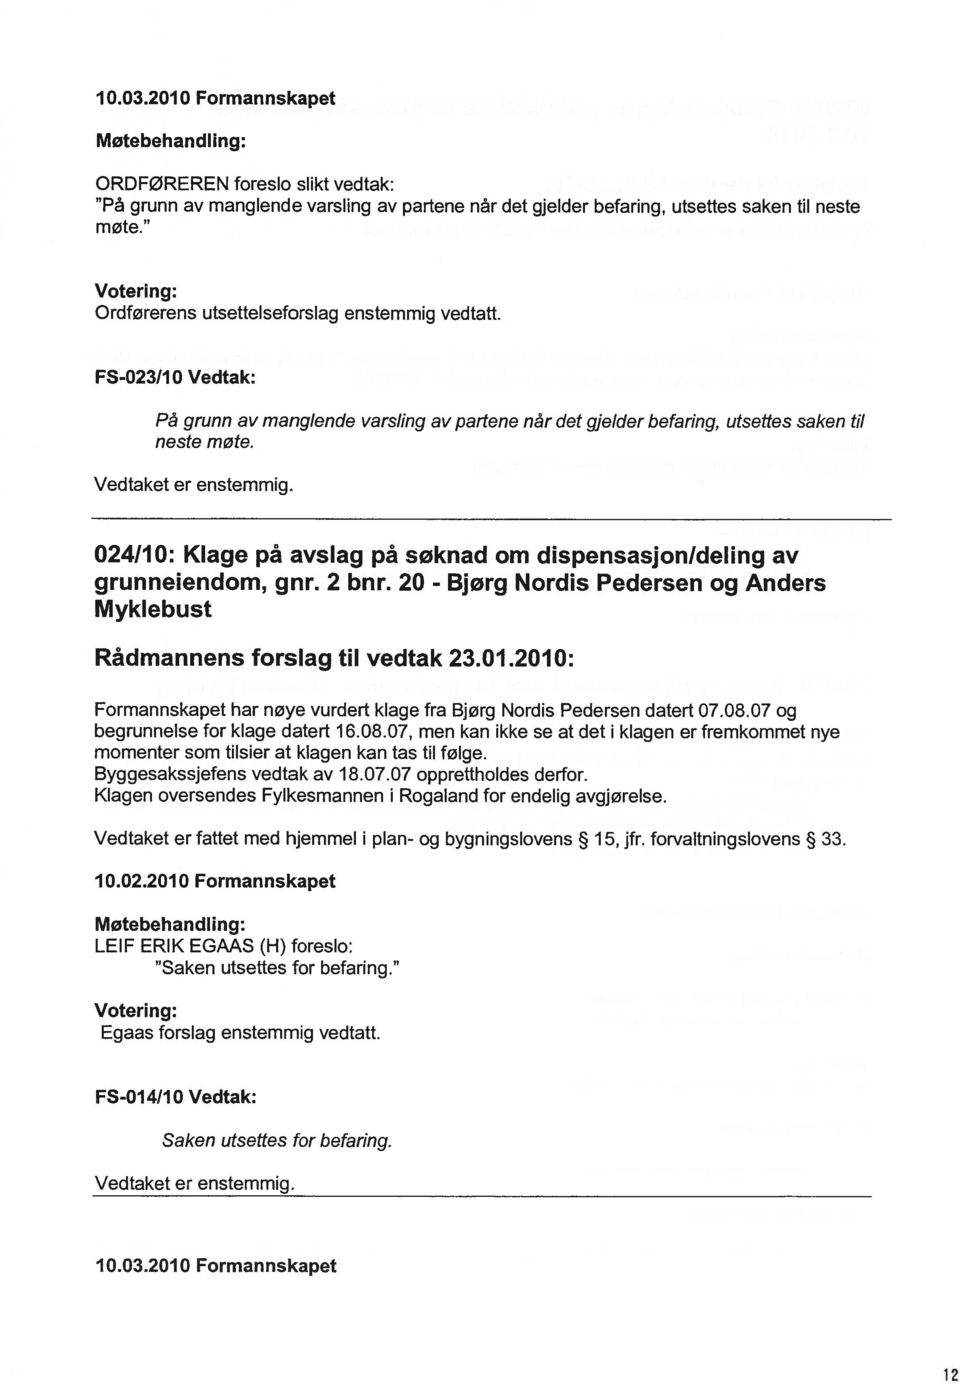 024/10: Klage på avslag på søknad om dispensasjonldeling av grunneiendom, gnr. 2 bnr. 20 - Bjørg Nordis Pedersen og Anders Myklebust Rådmannens forslag til vedtak 23.01.